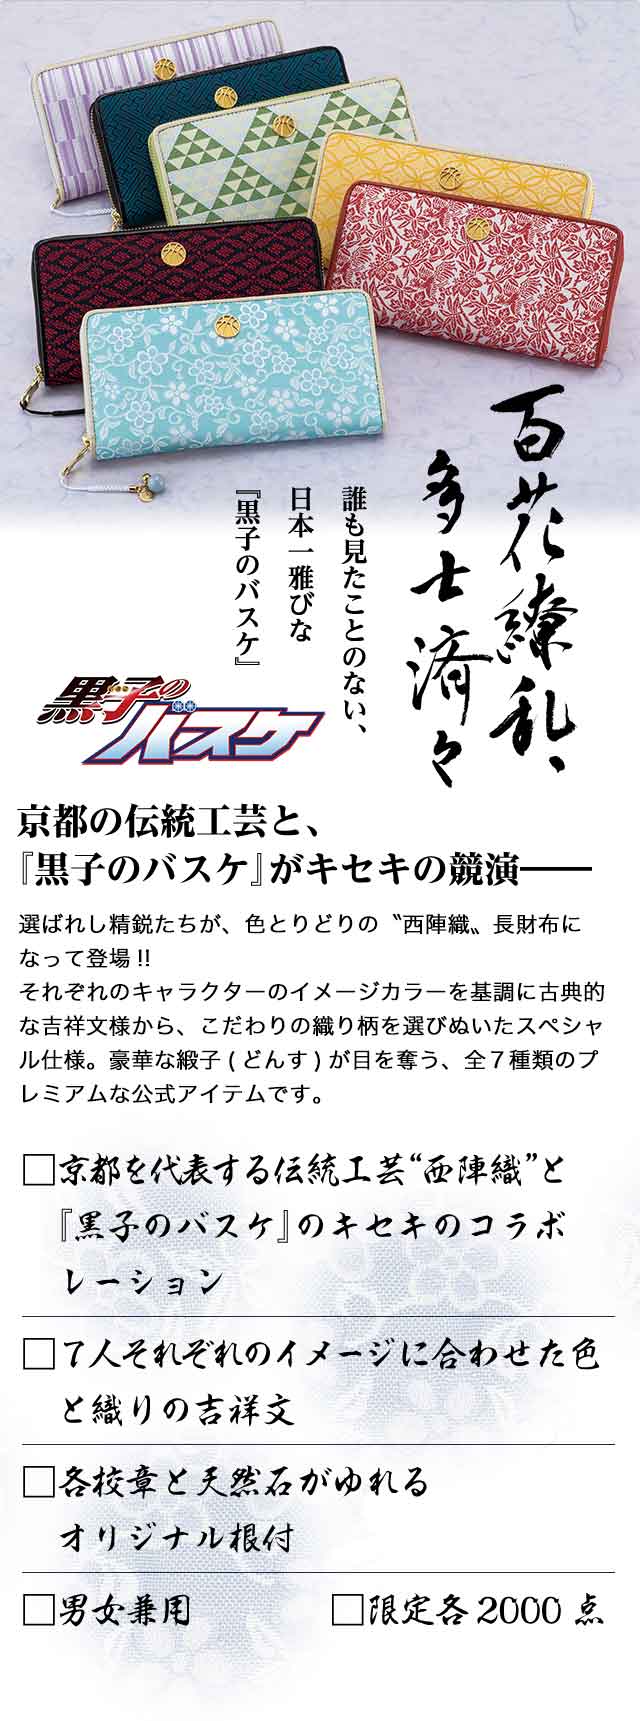 京都 X 黒子のバスケ 西陣織長財布 全七種類プレミアムキャラクター